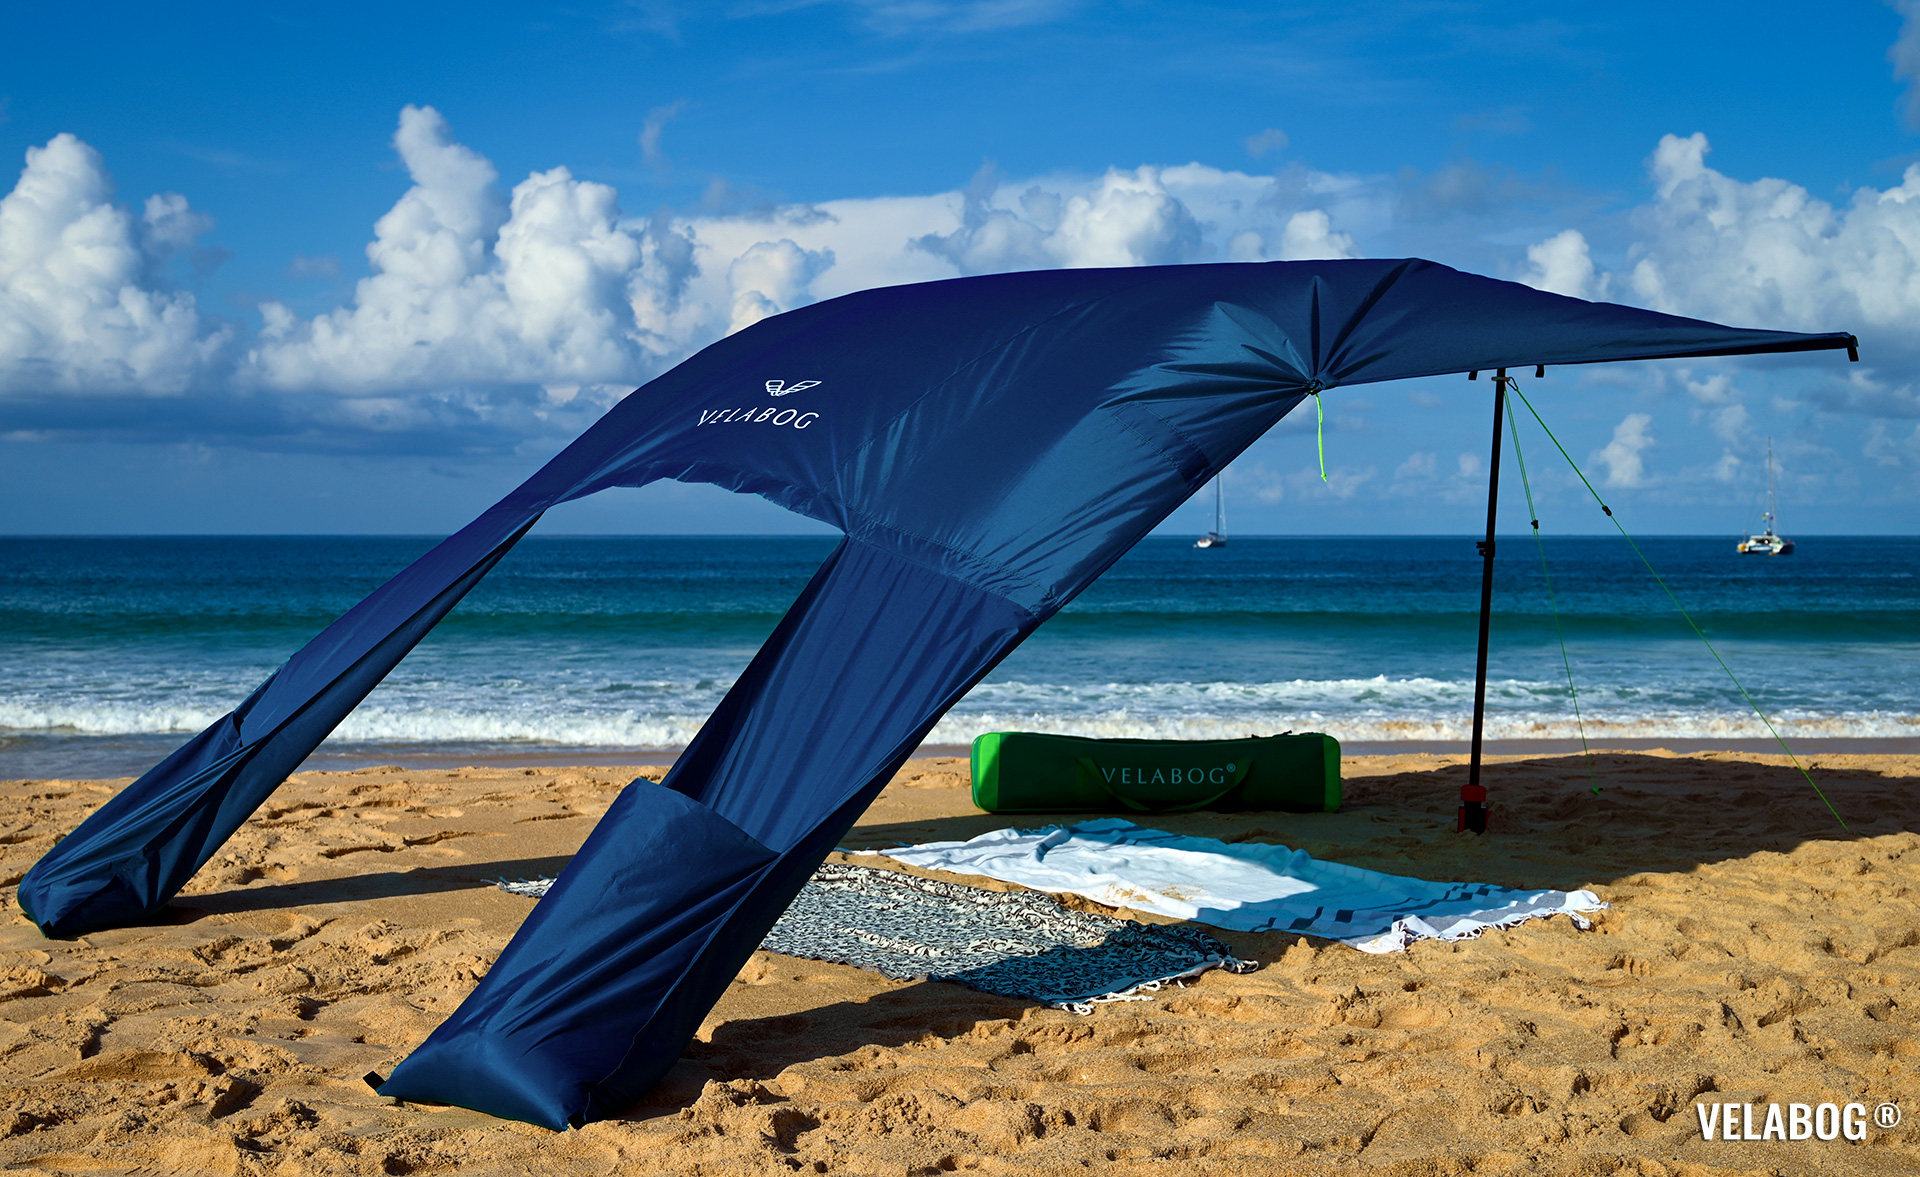 Namiot plażowy żagiel słoneczny Velabog Breeze. Opcja montażu A - od lekkiego do silnego wiatru. Kolor: nocny błękit. Najlepsza ochrona przeciwsłoneczna na plaży. | Velabog ©